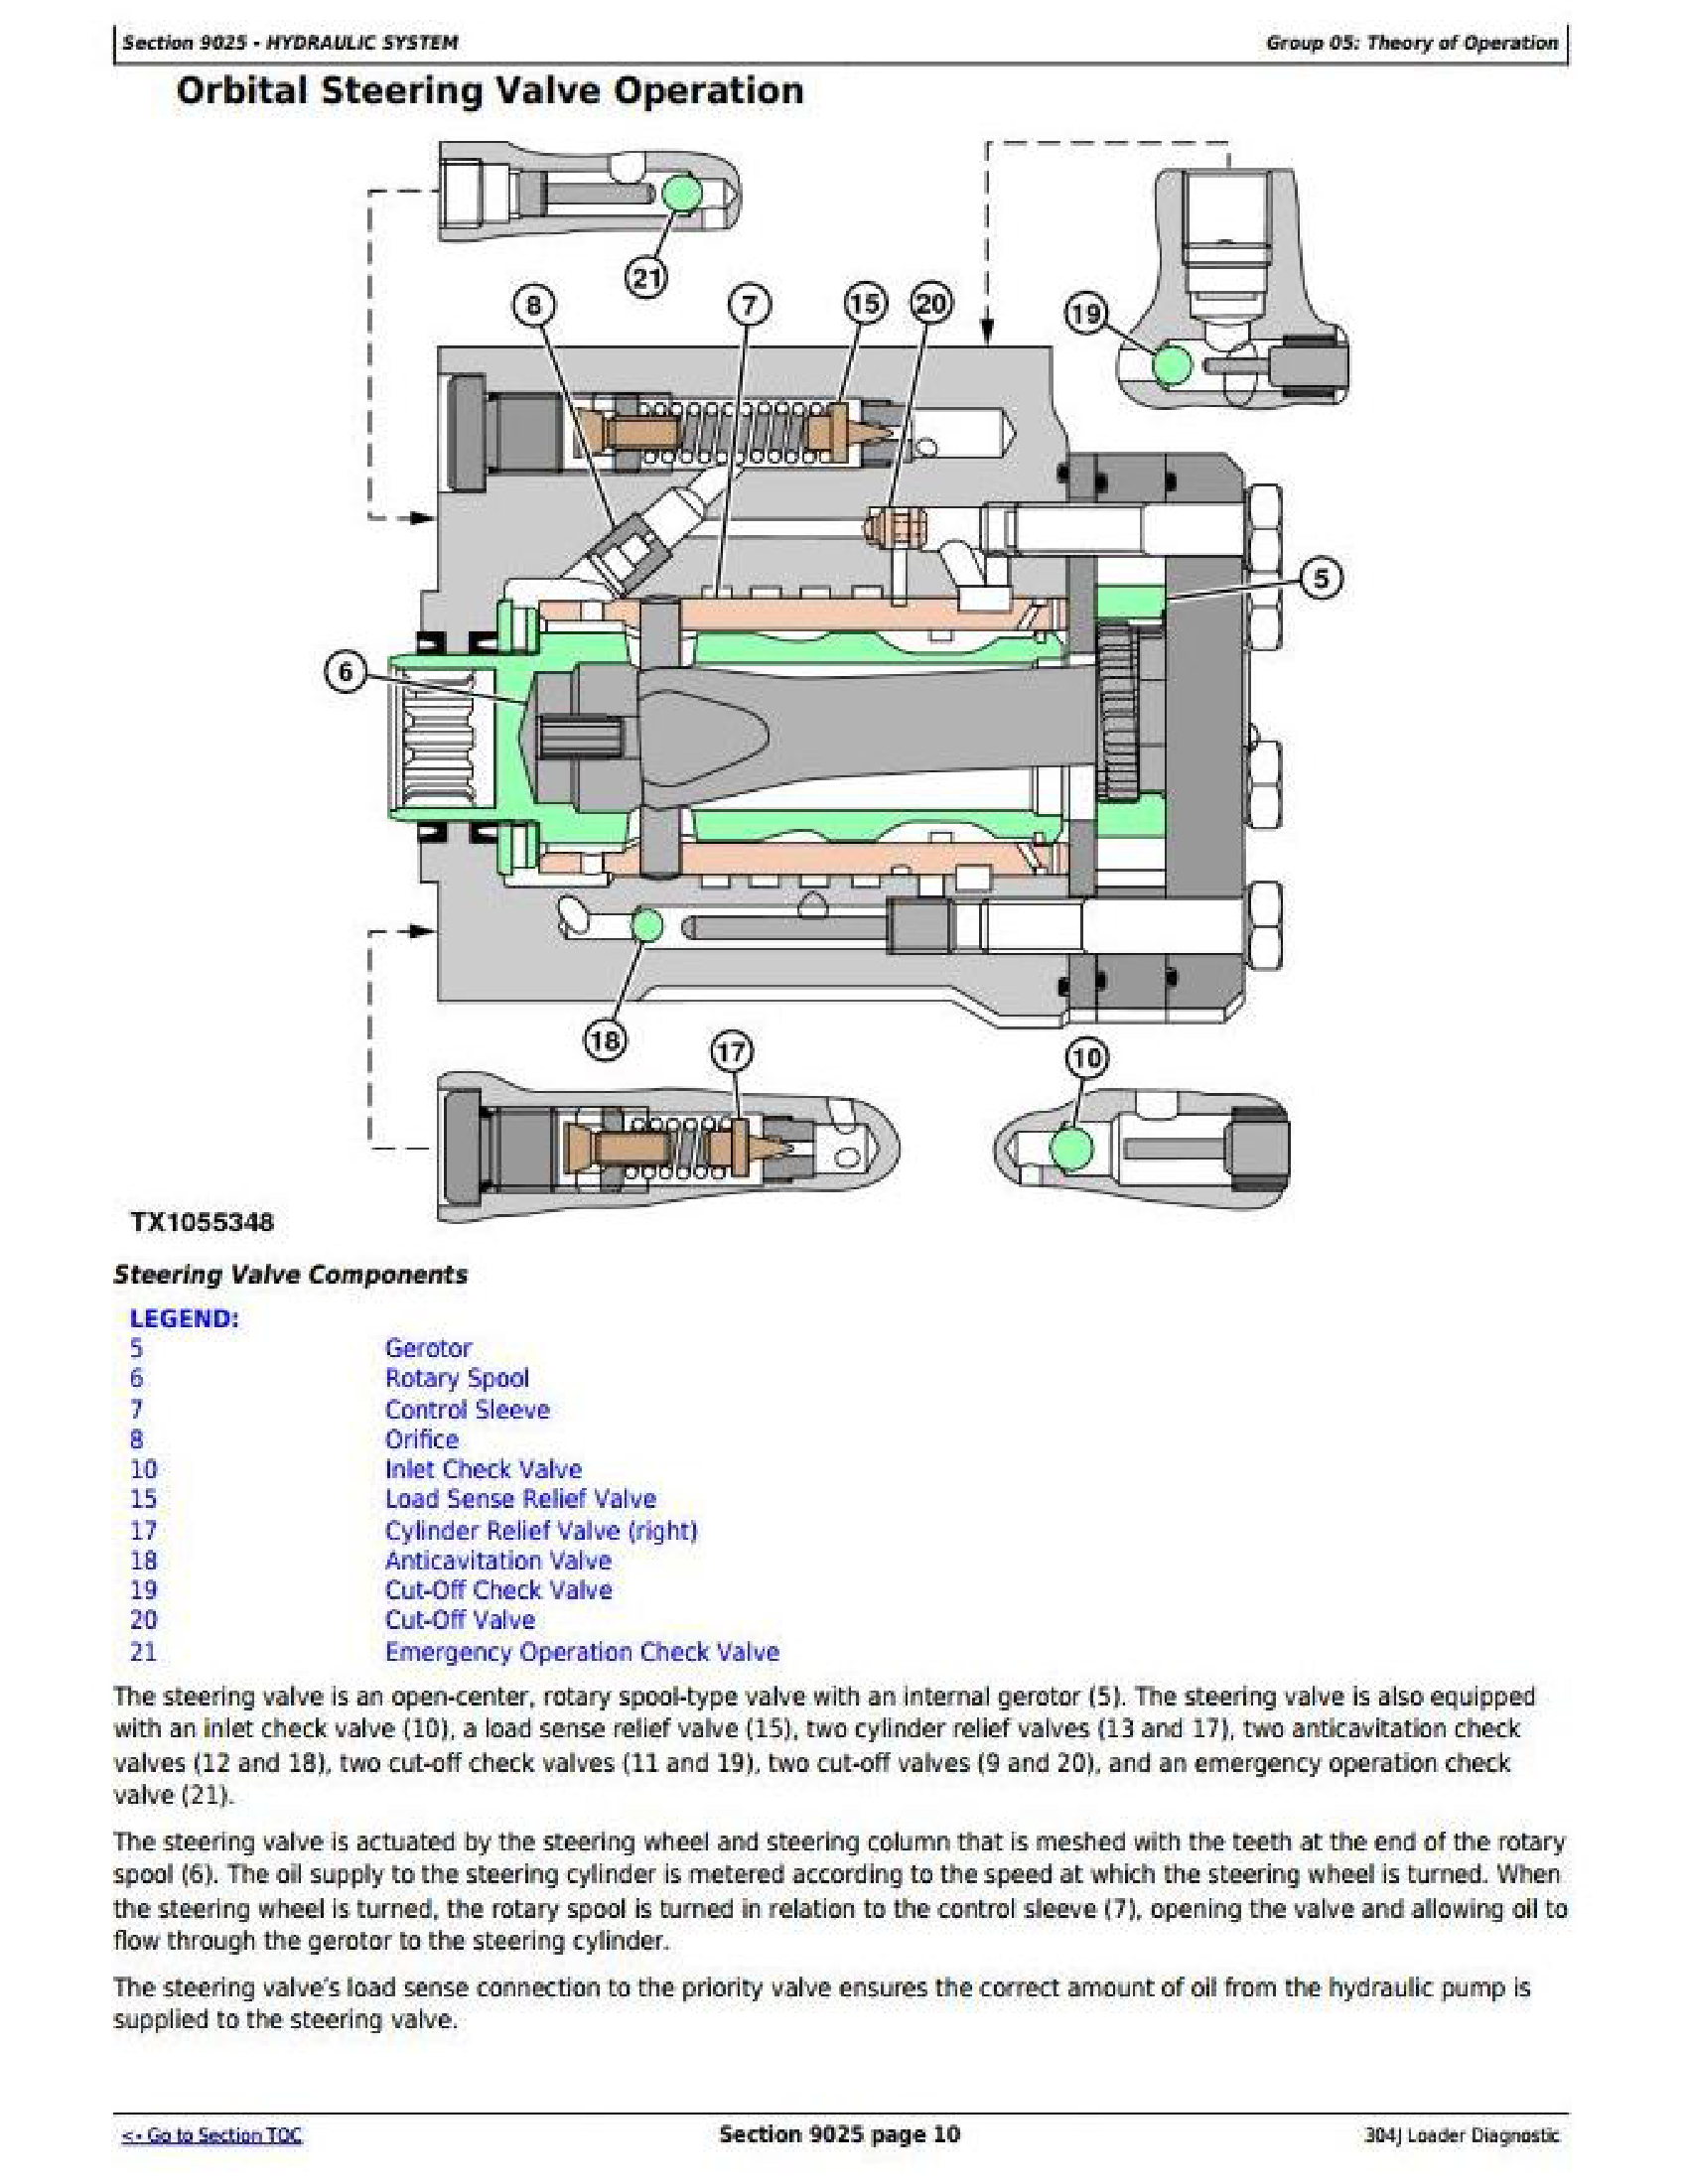 John Deere 23372 manual pdf